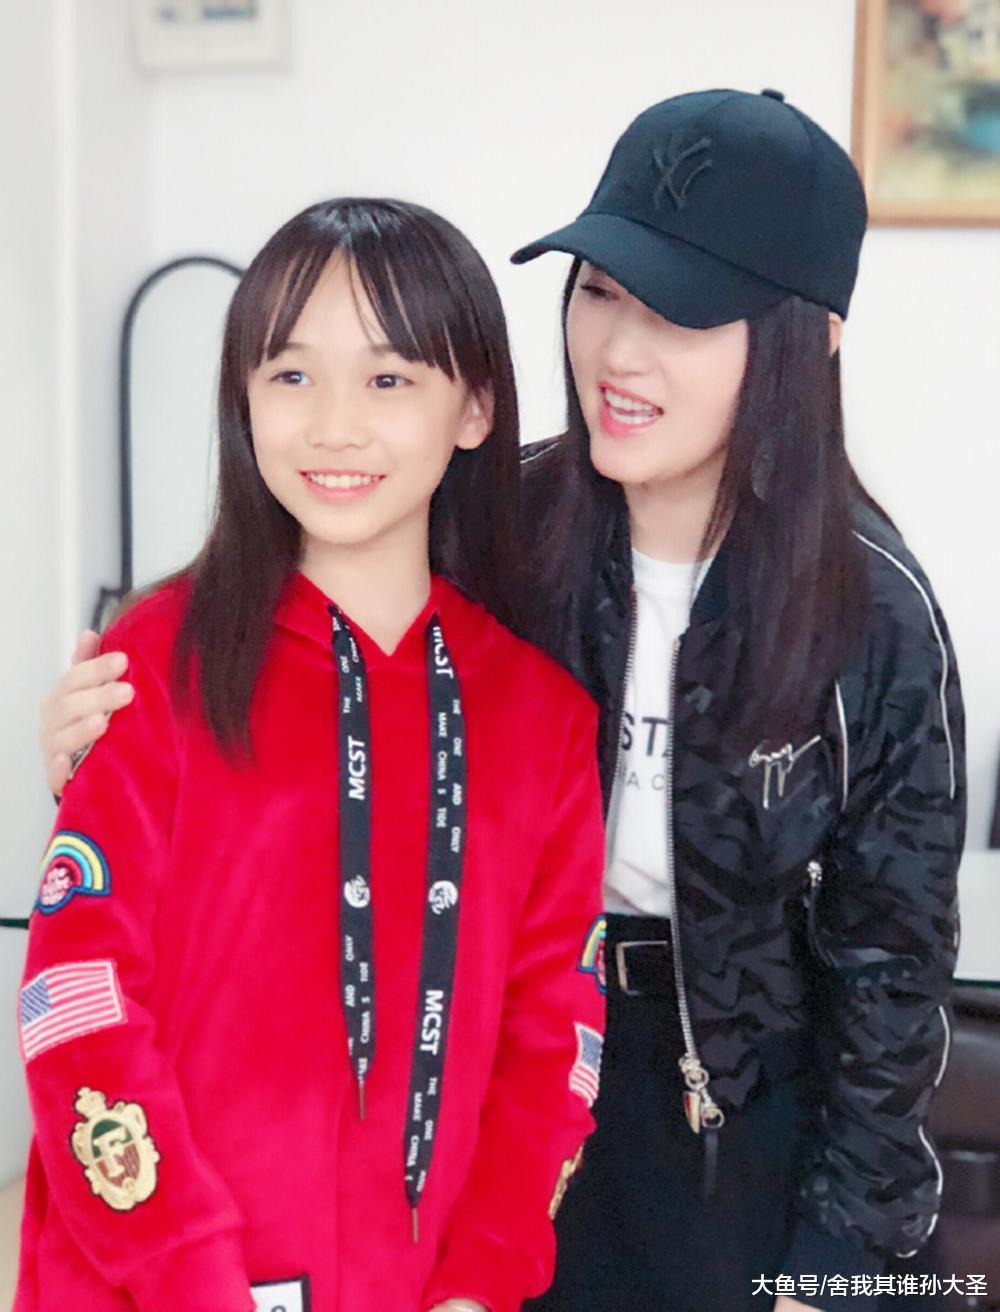 《新声代》第五季学员尹子璐小姑娘微博晒出一组与甜歌天后杨钰莹